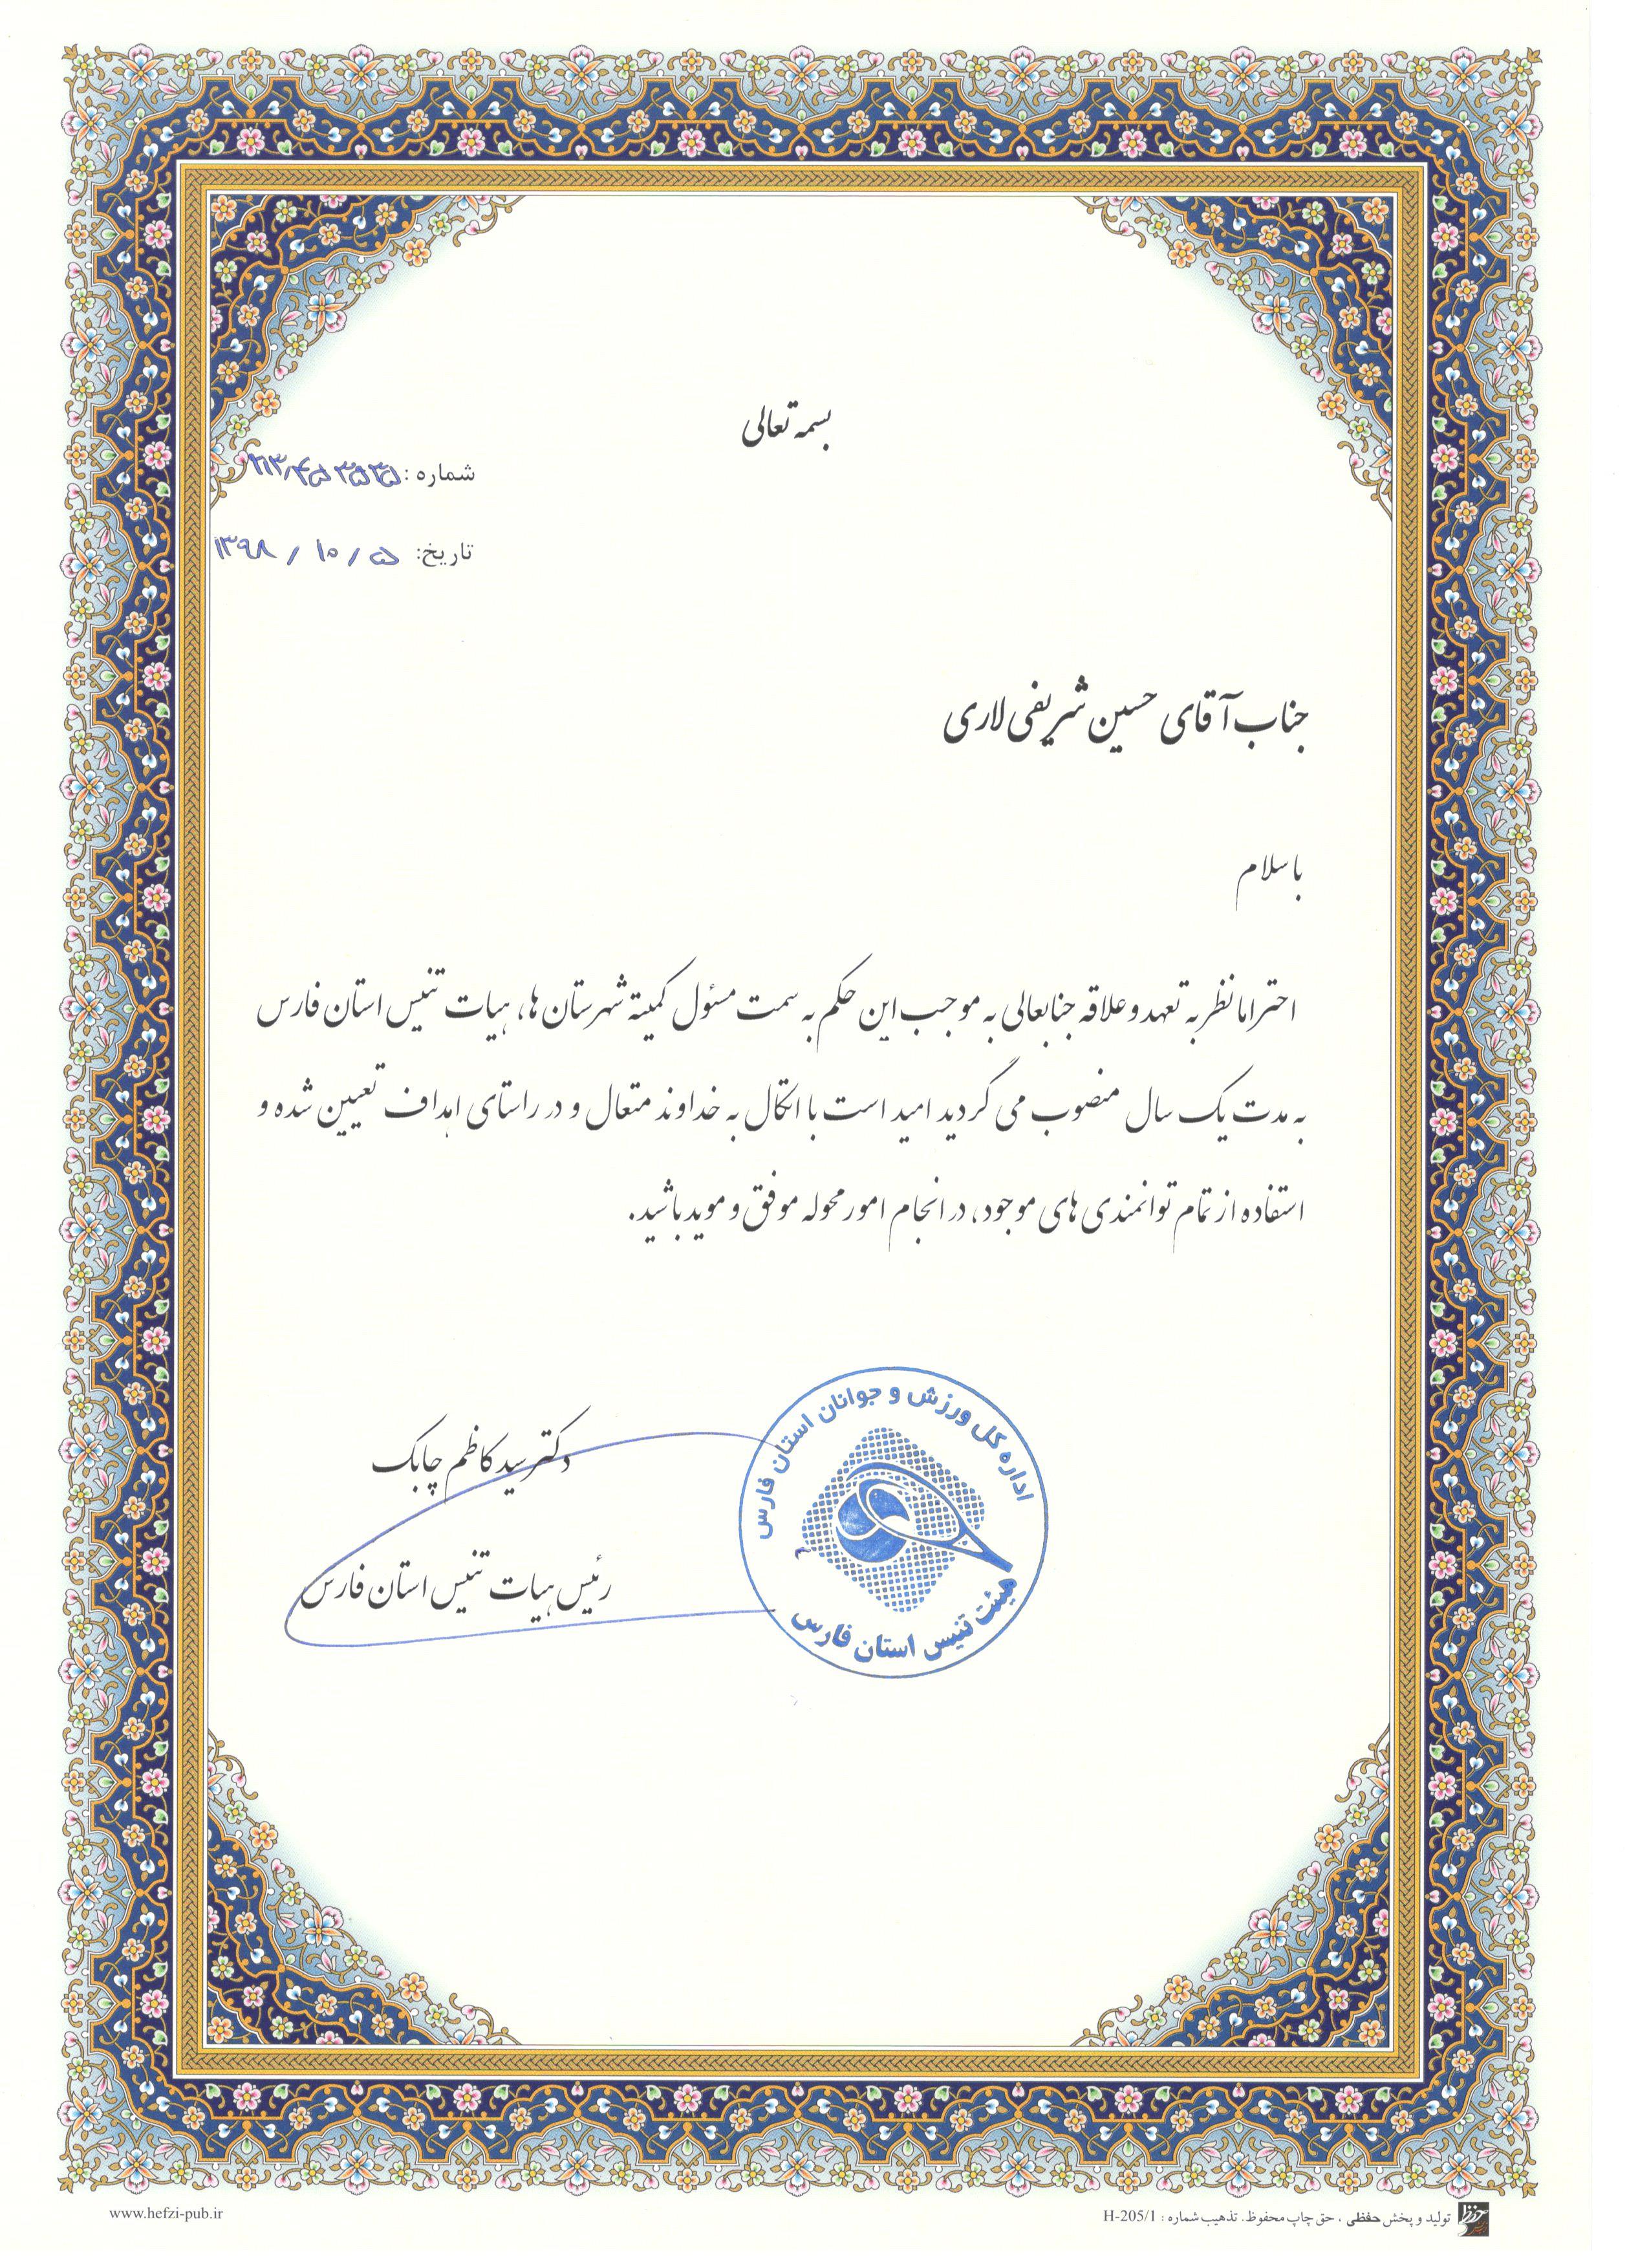 حسین شریفی لاری به عنوان مسئول کمیته شهرستان ها معرفی شد